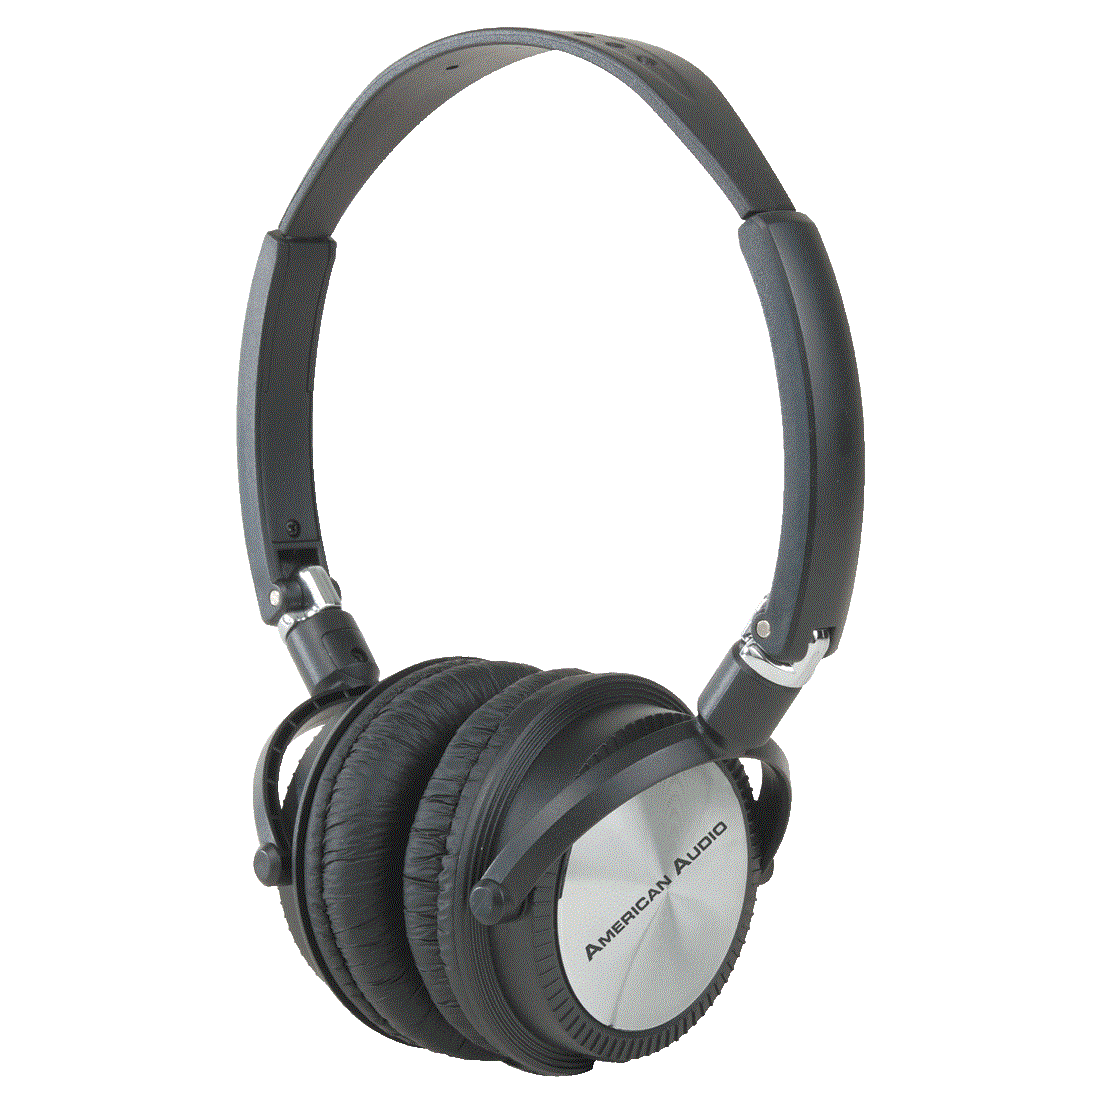 Cuffie On-ear ADJ HP200 headphones